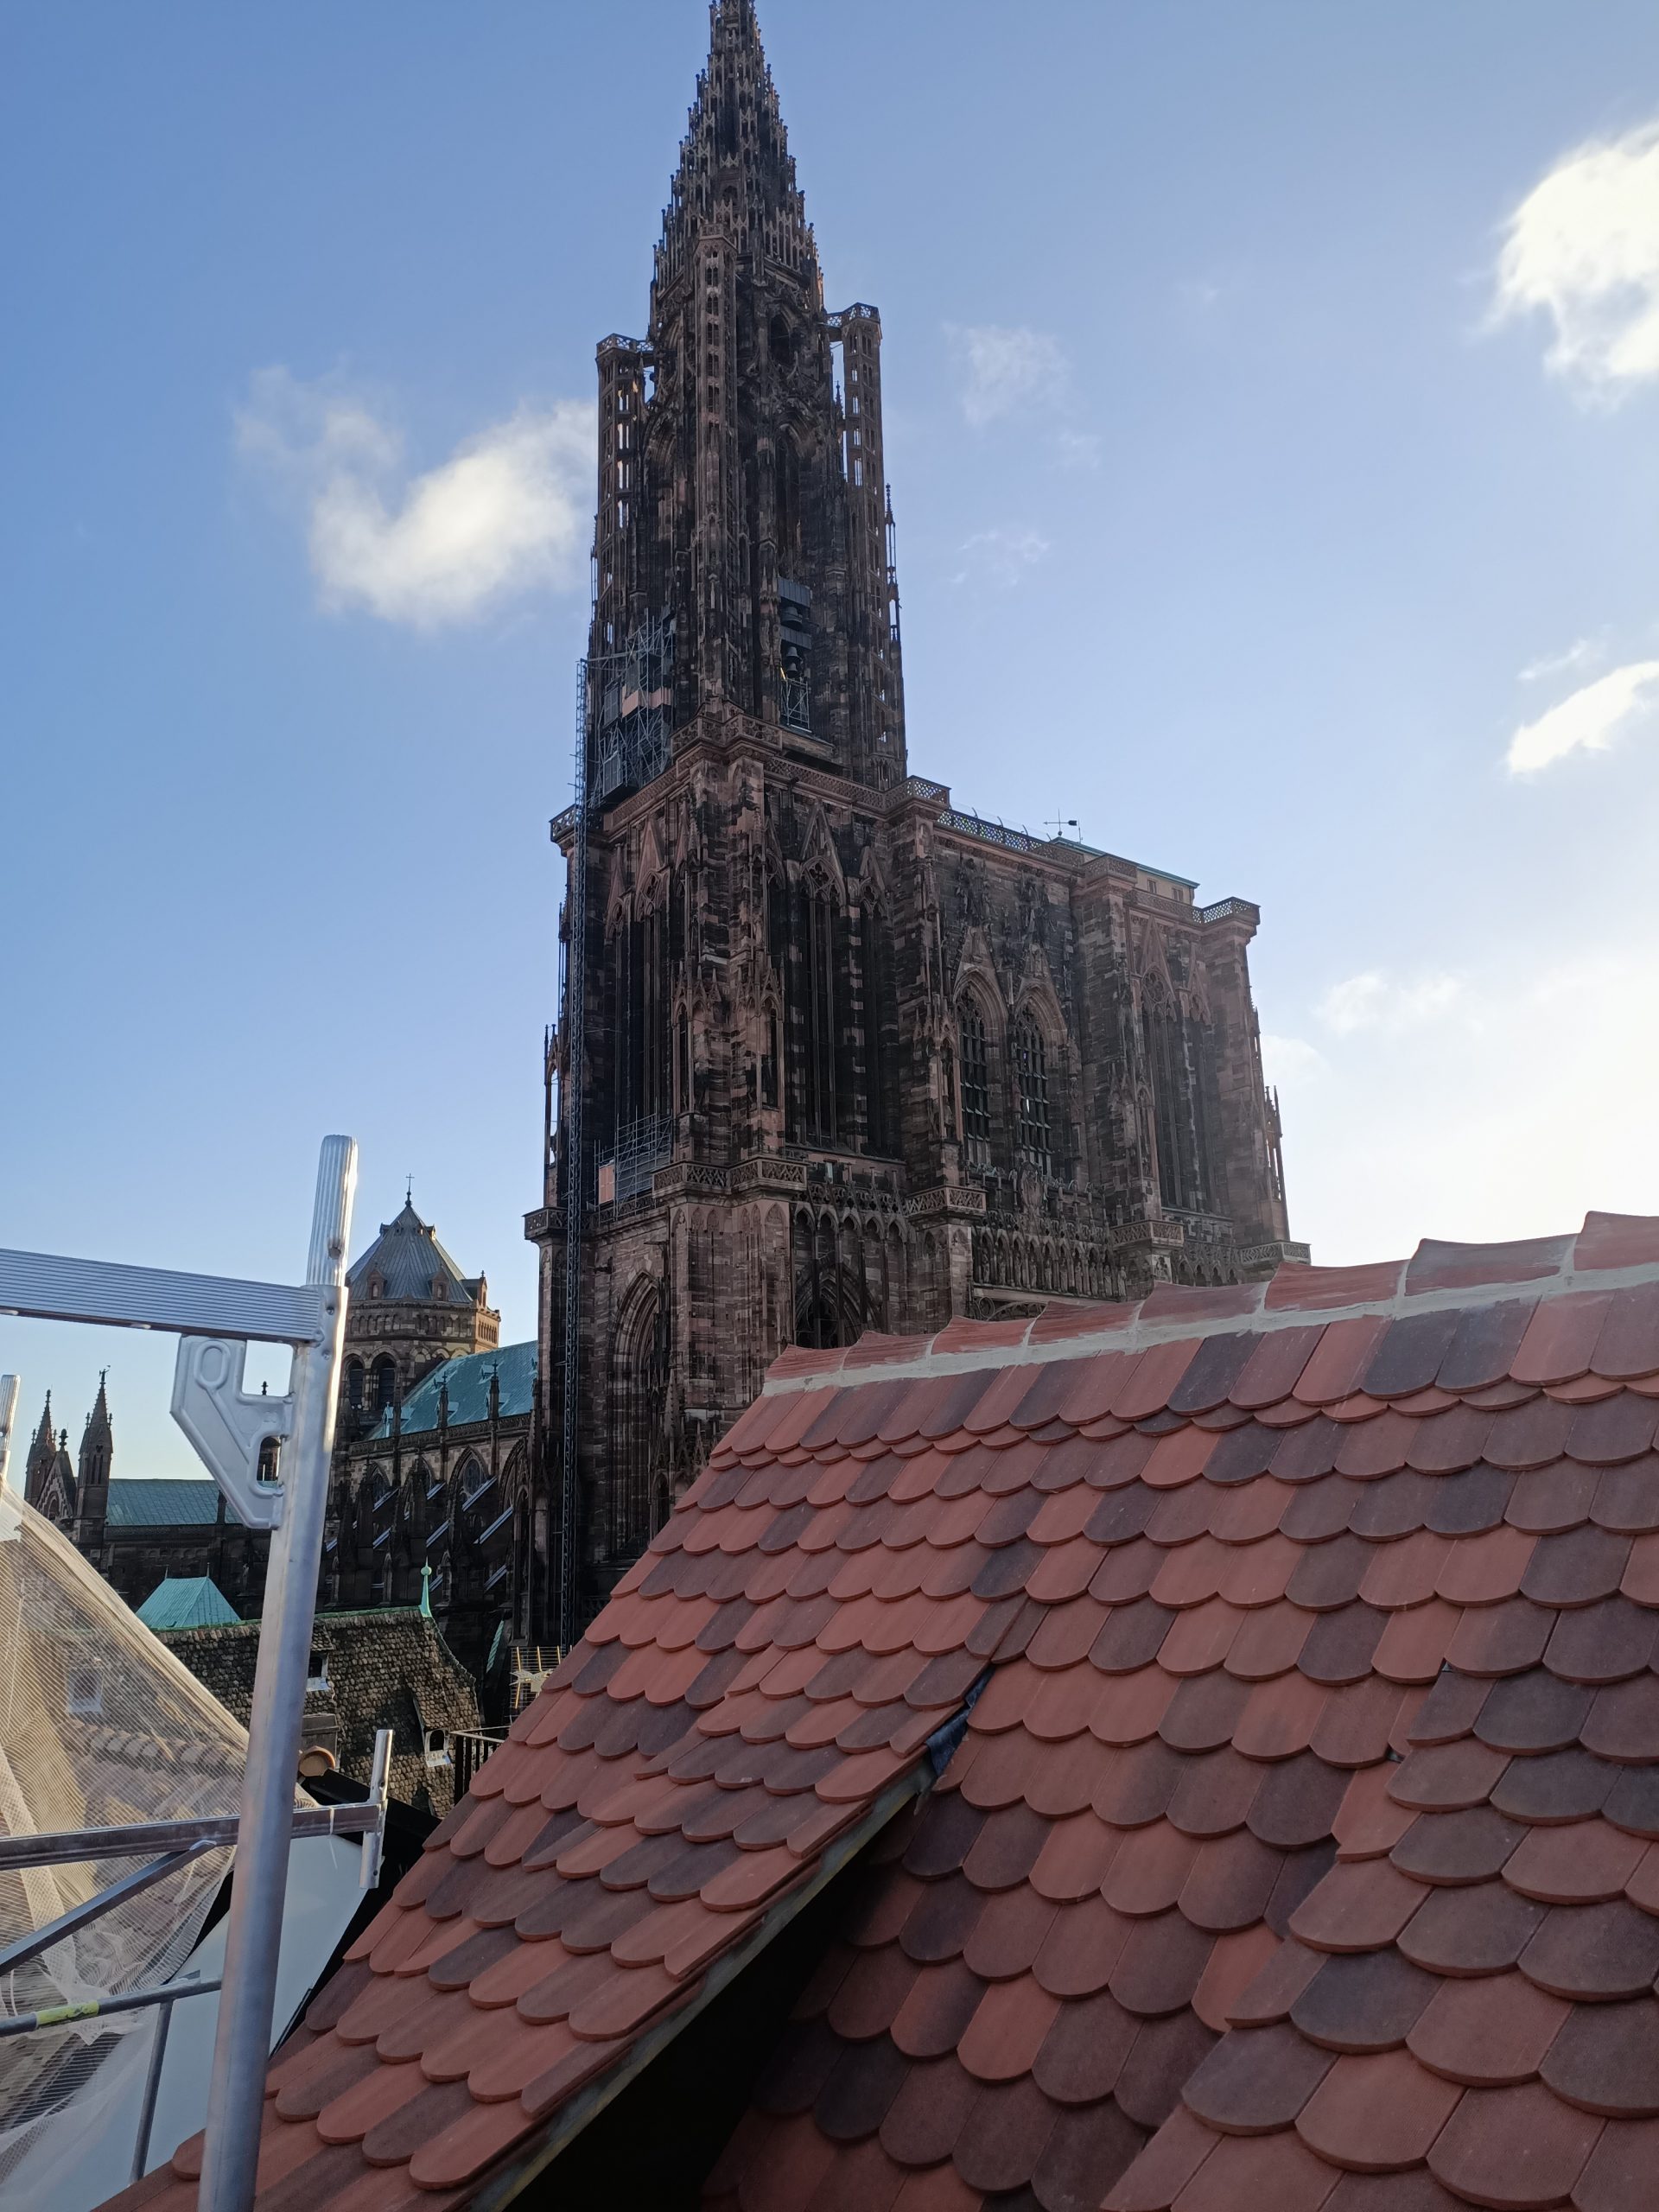 Cathédrale de strasbourg vue d'un toit en tuile plate